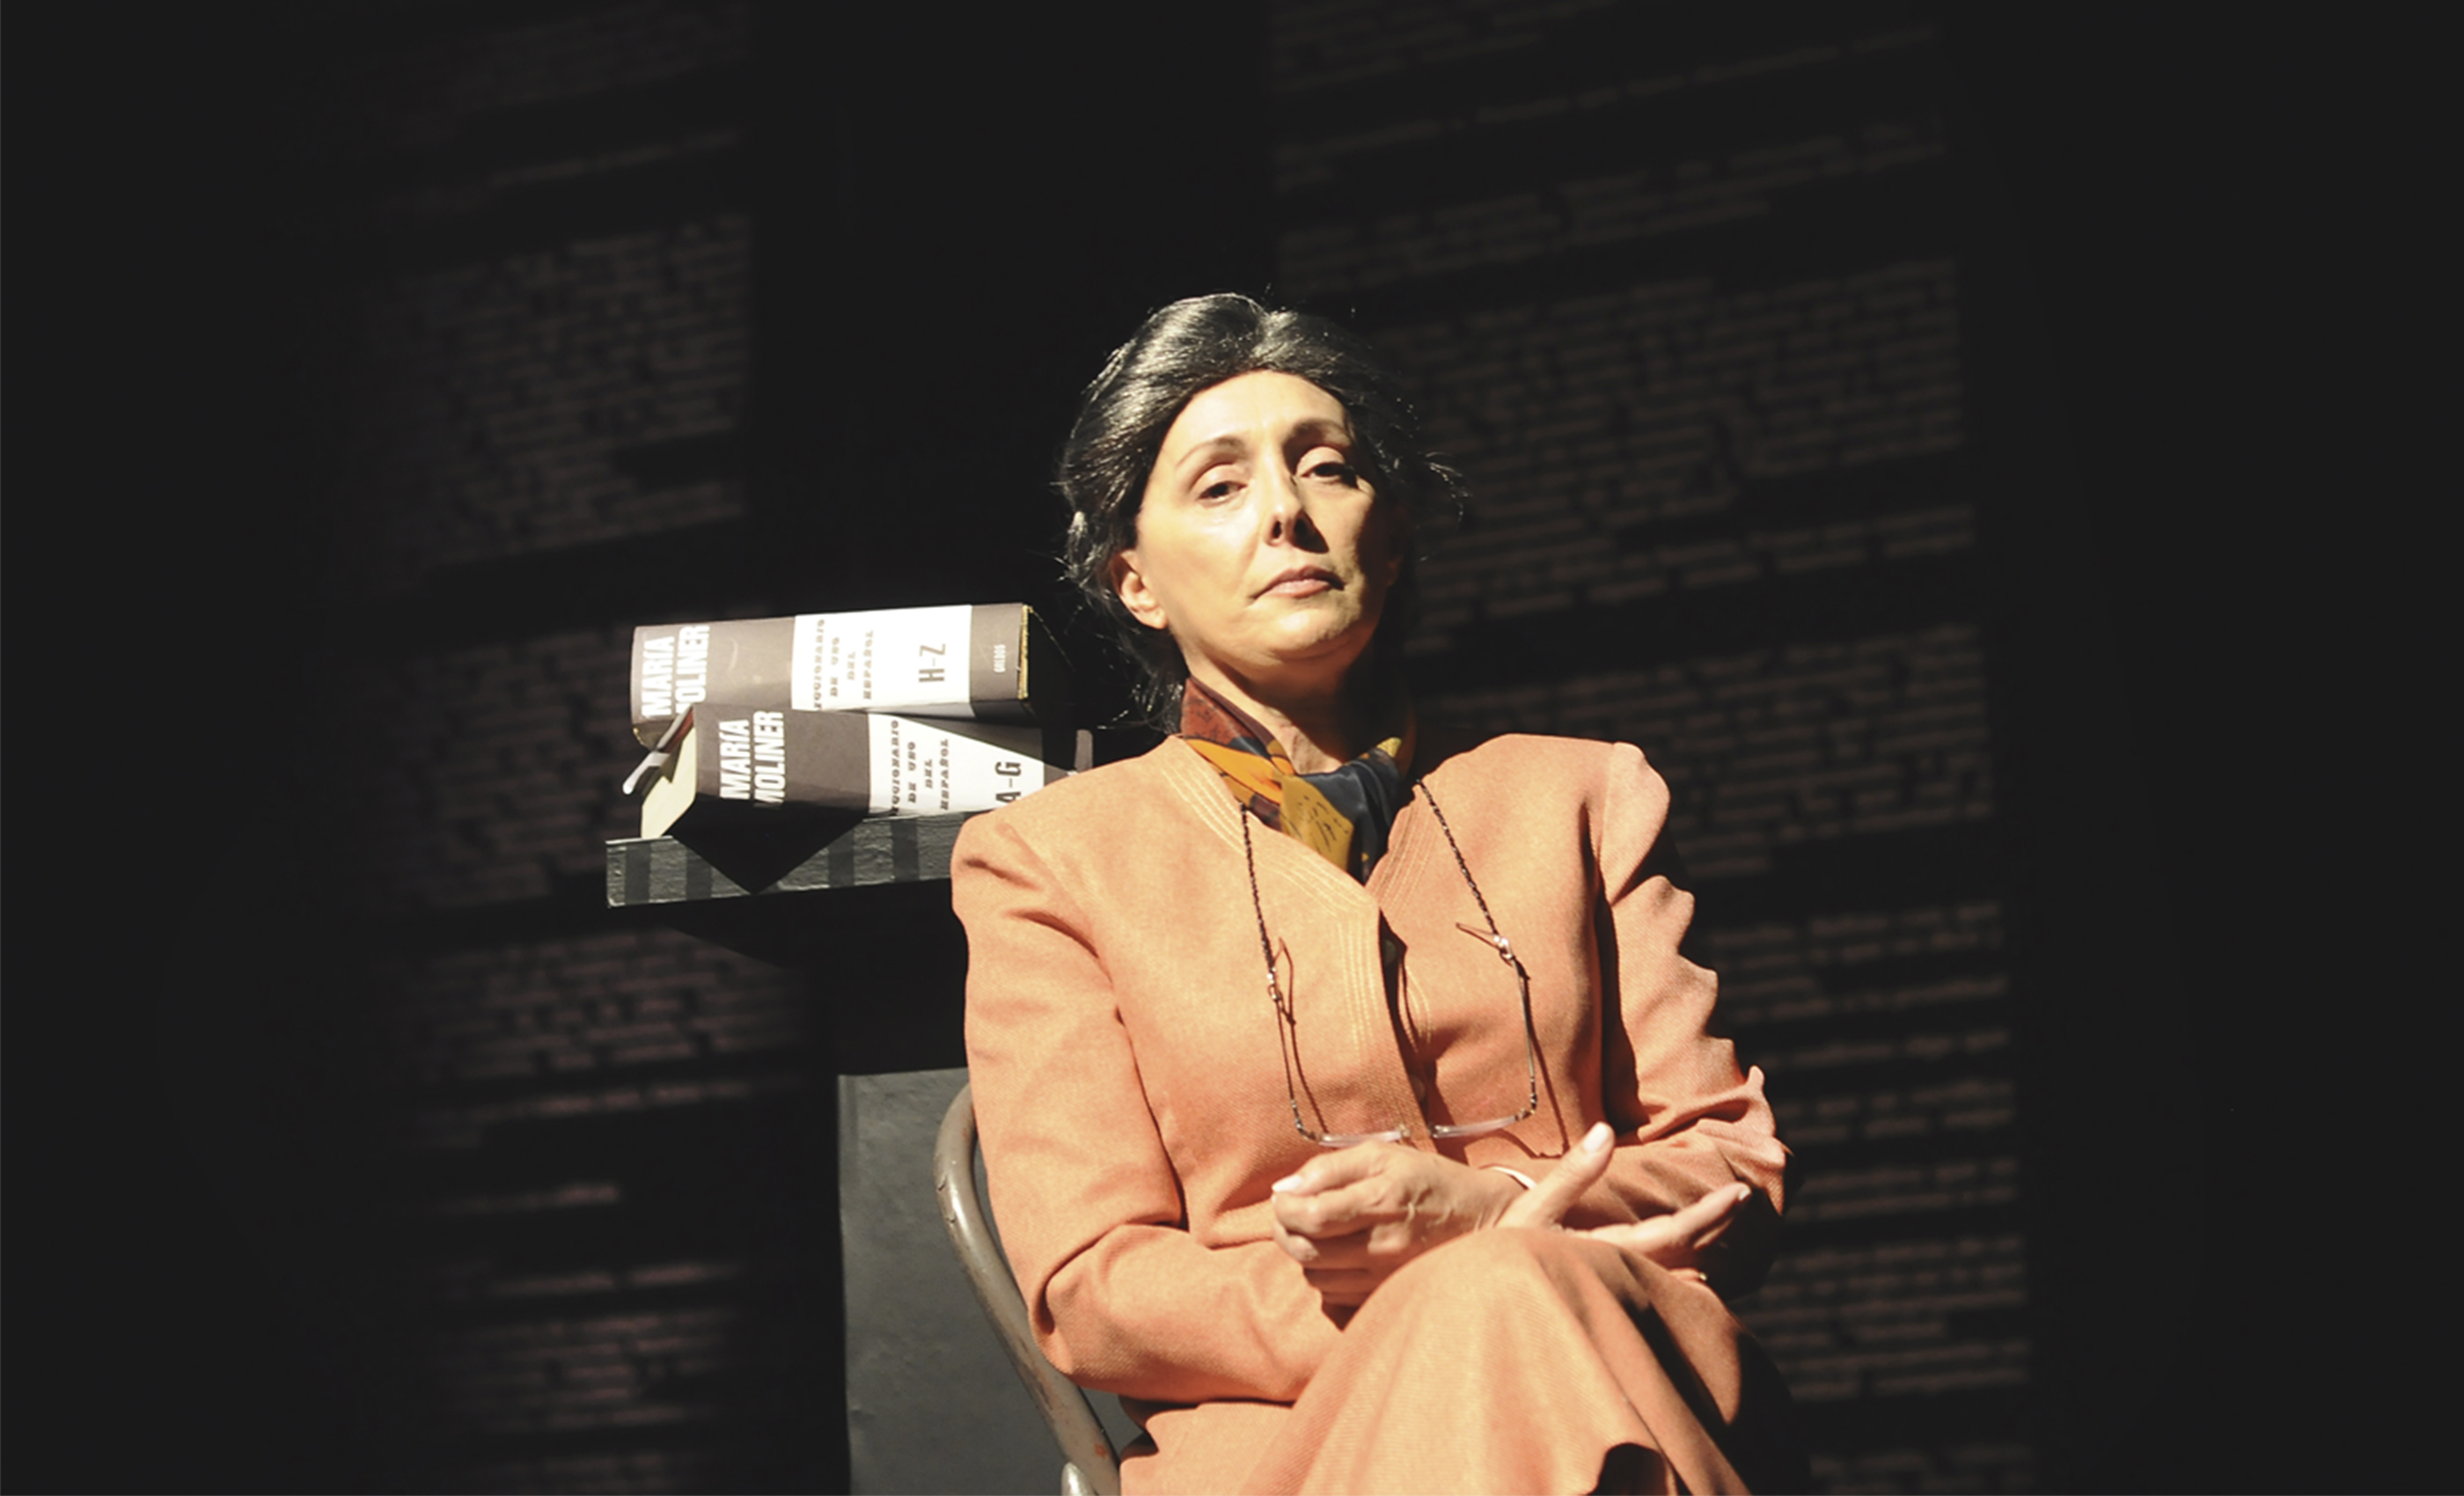 Teatro en GAM: Vuelve “El Diccionario”, La aplaudida obra sobre María Moliner